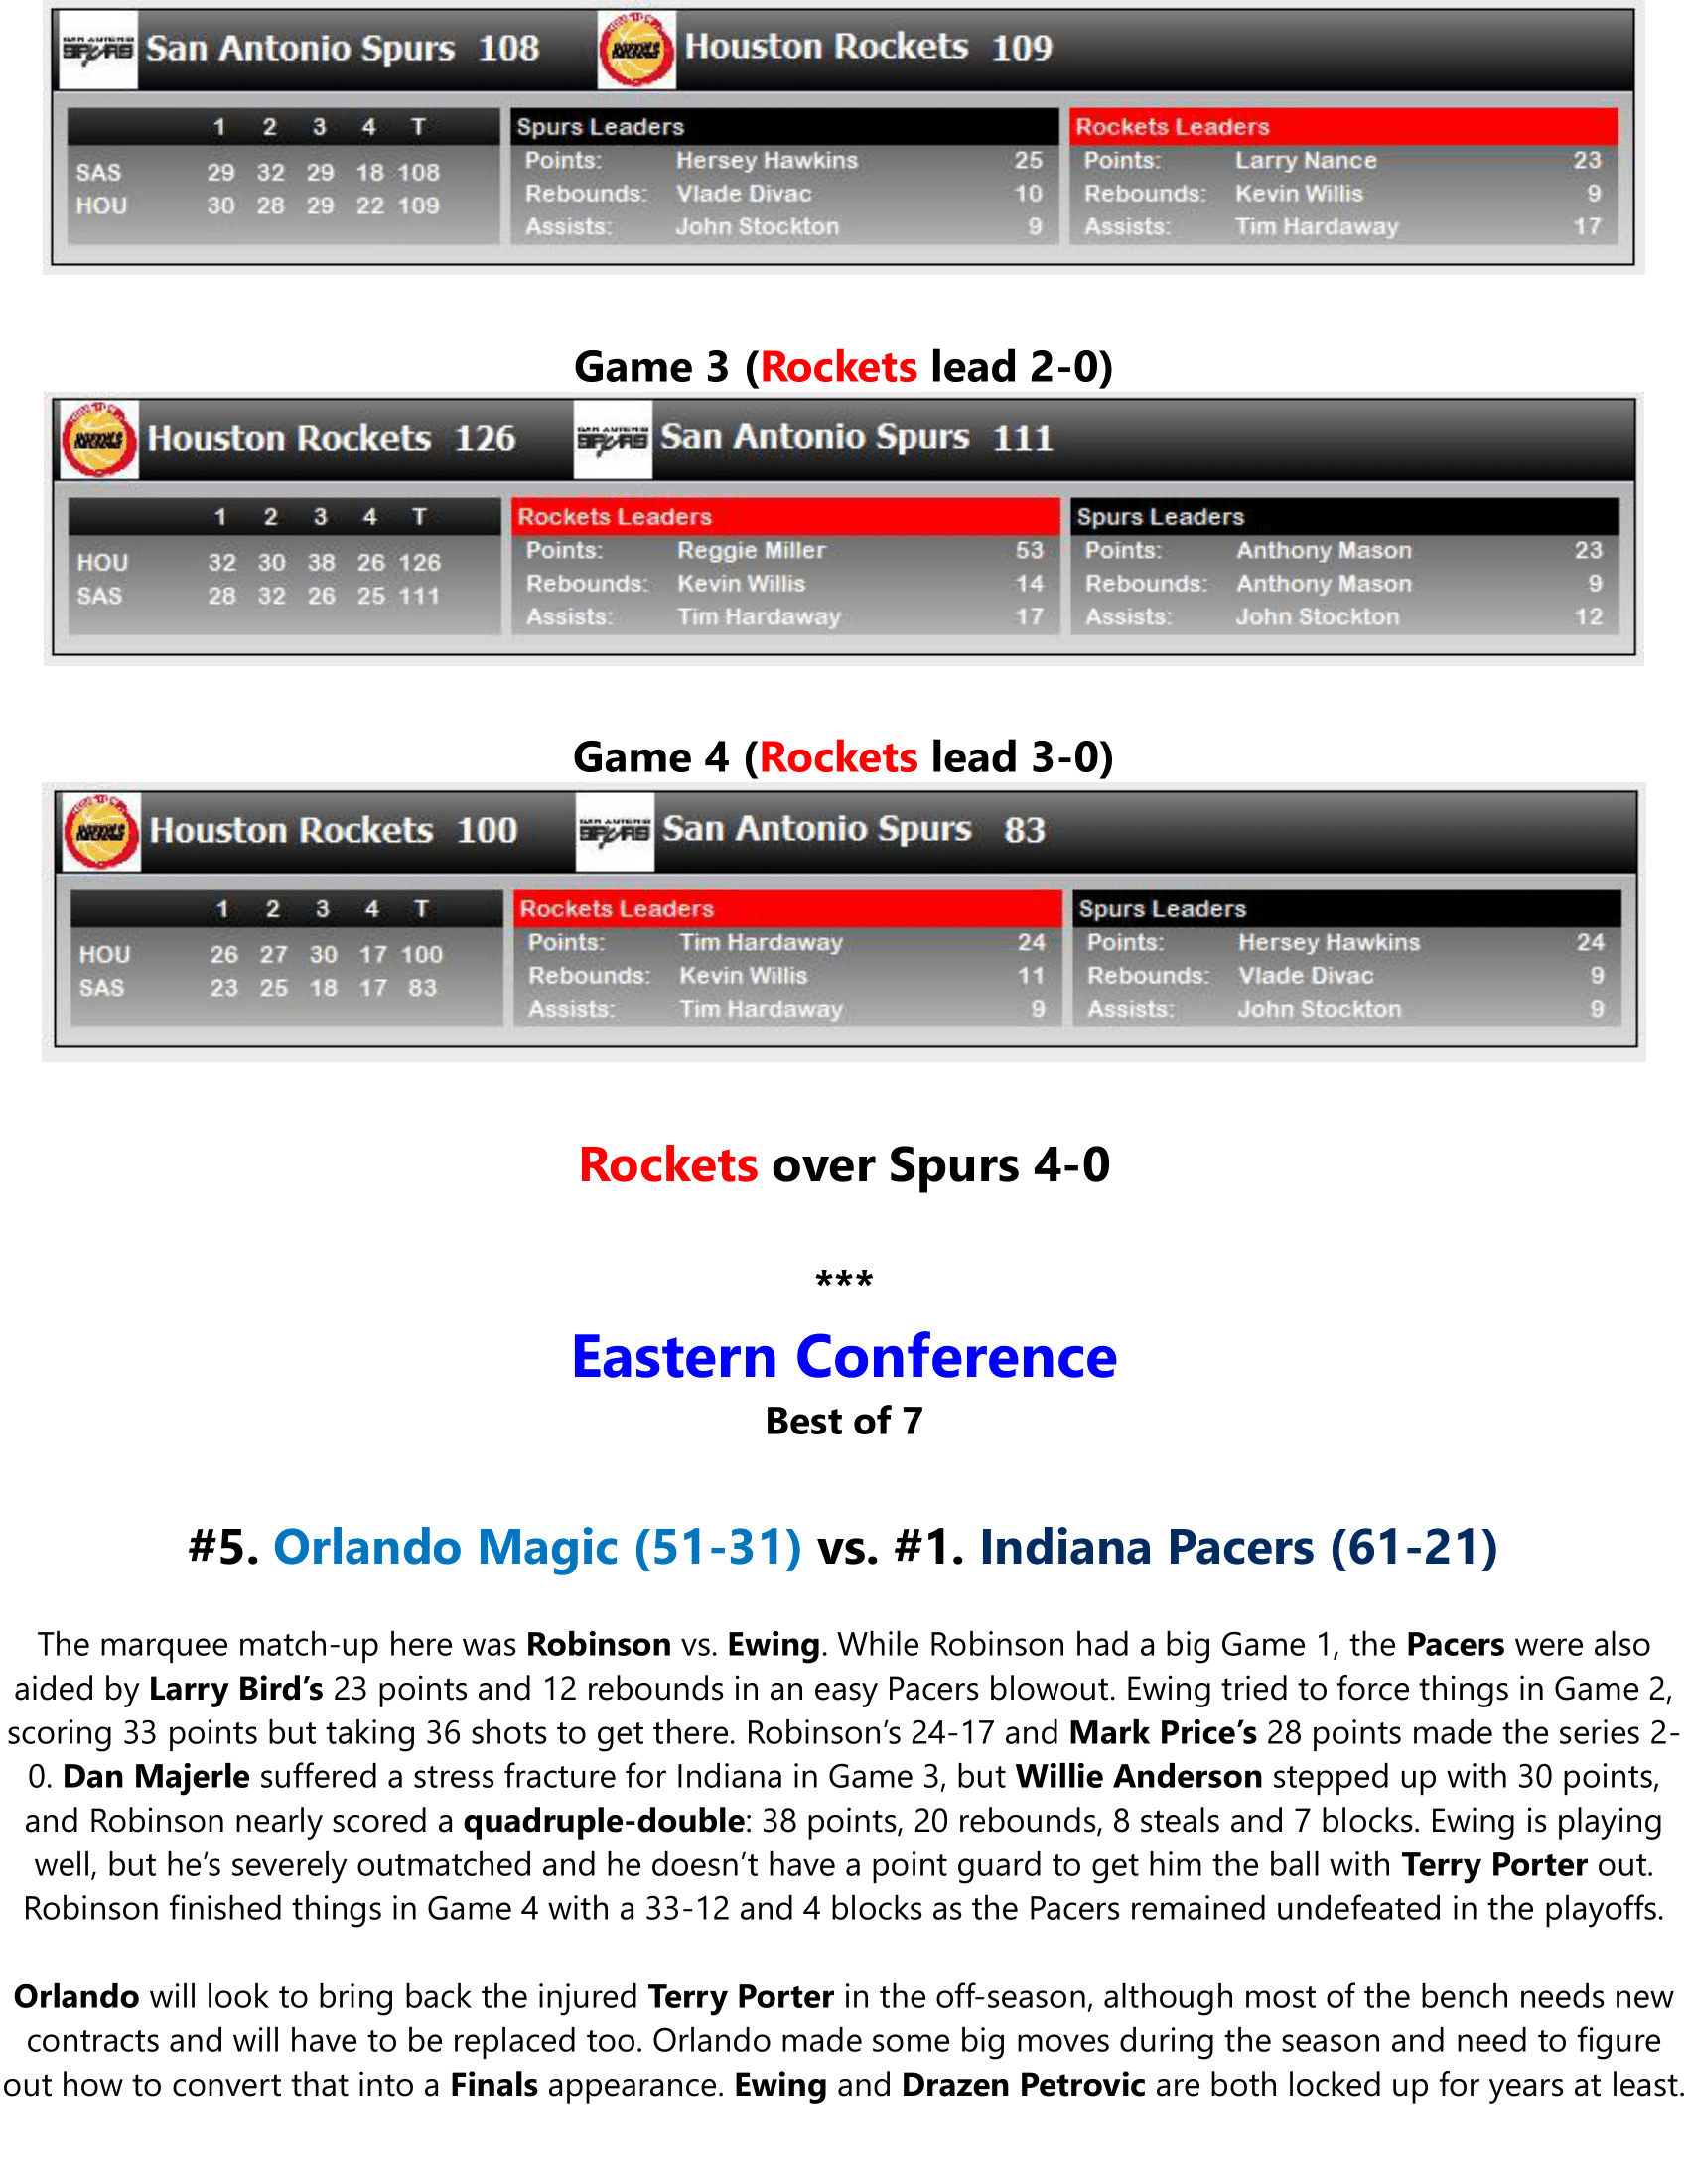 91-92-Part-5-NBA-Playoffs-17.png